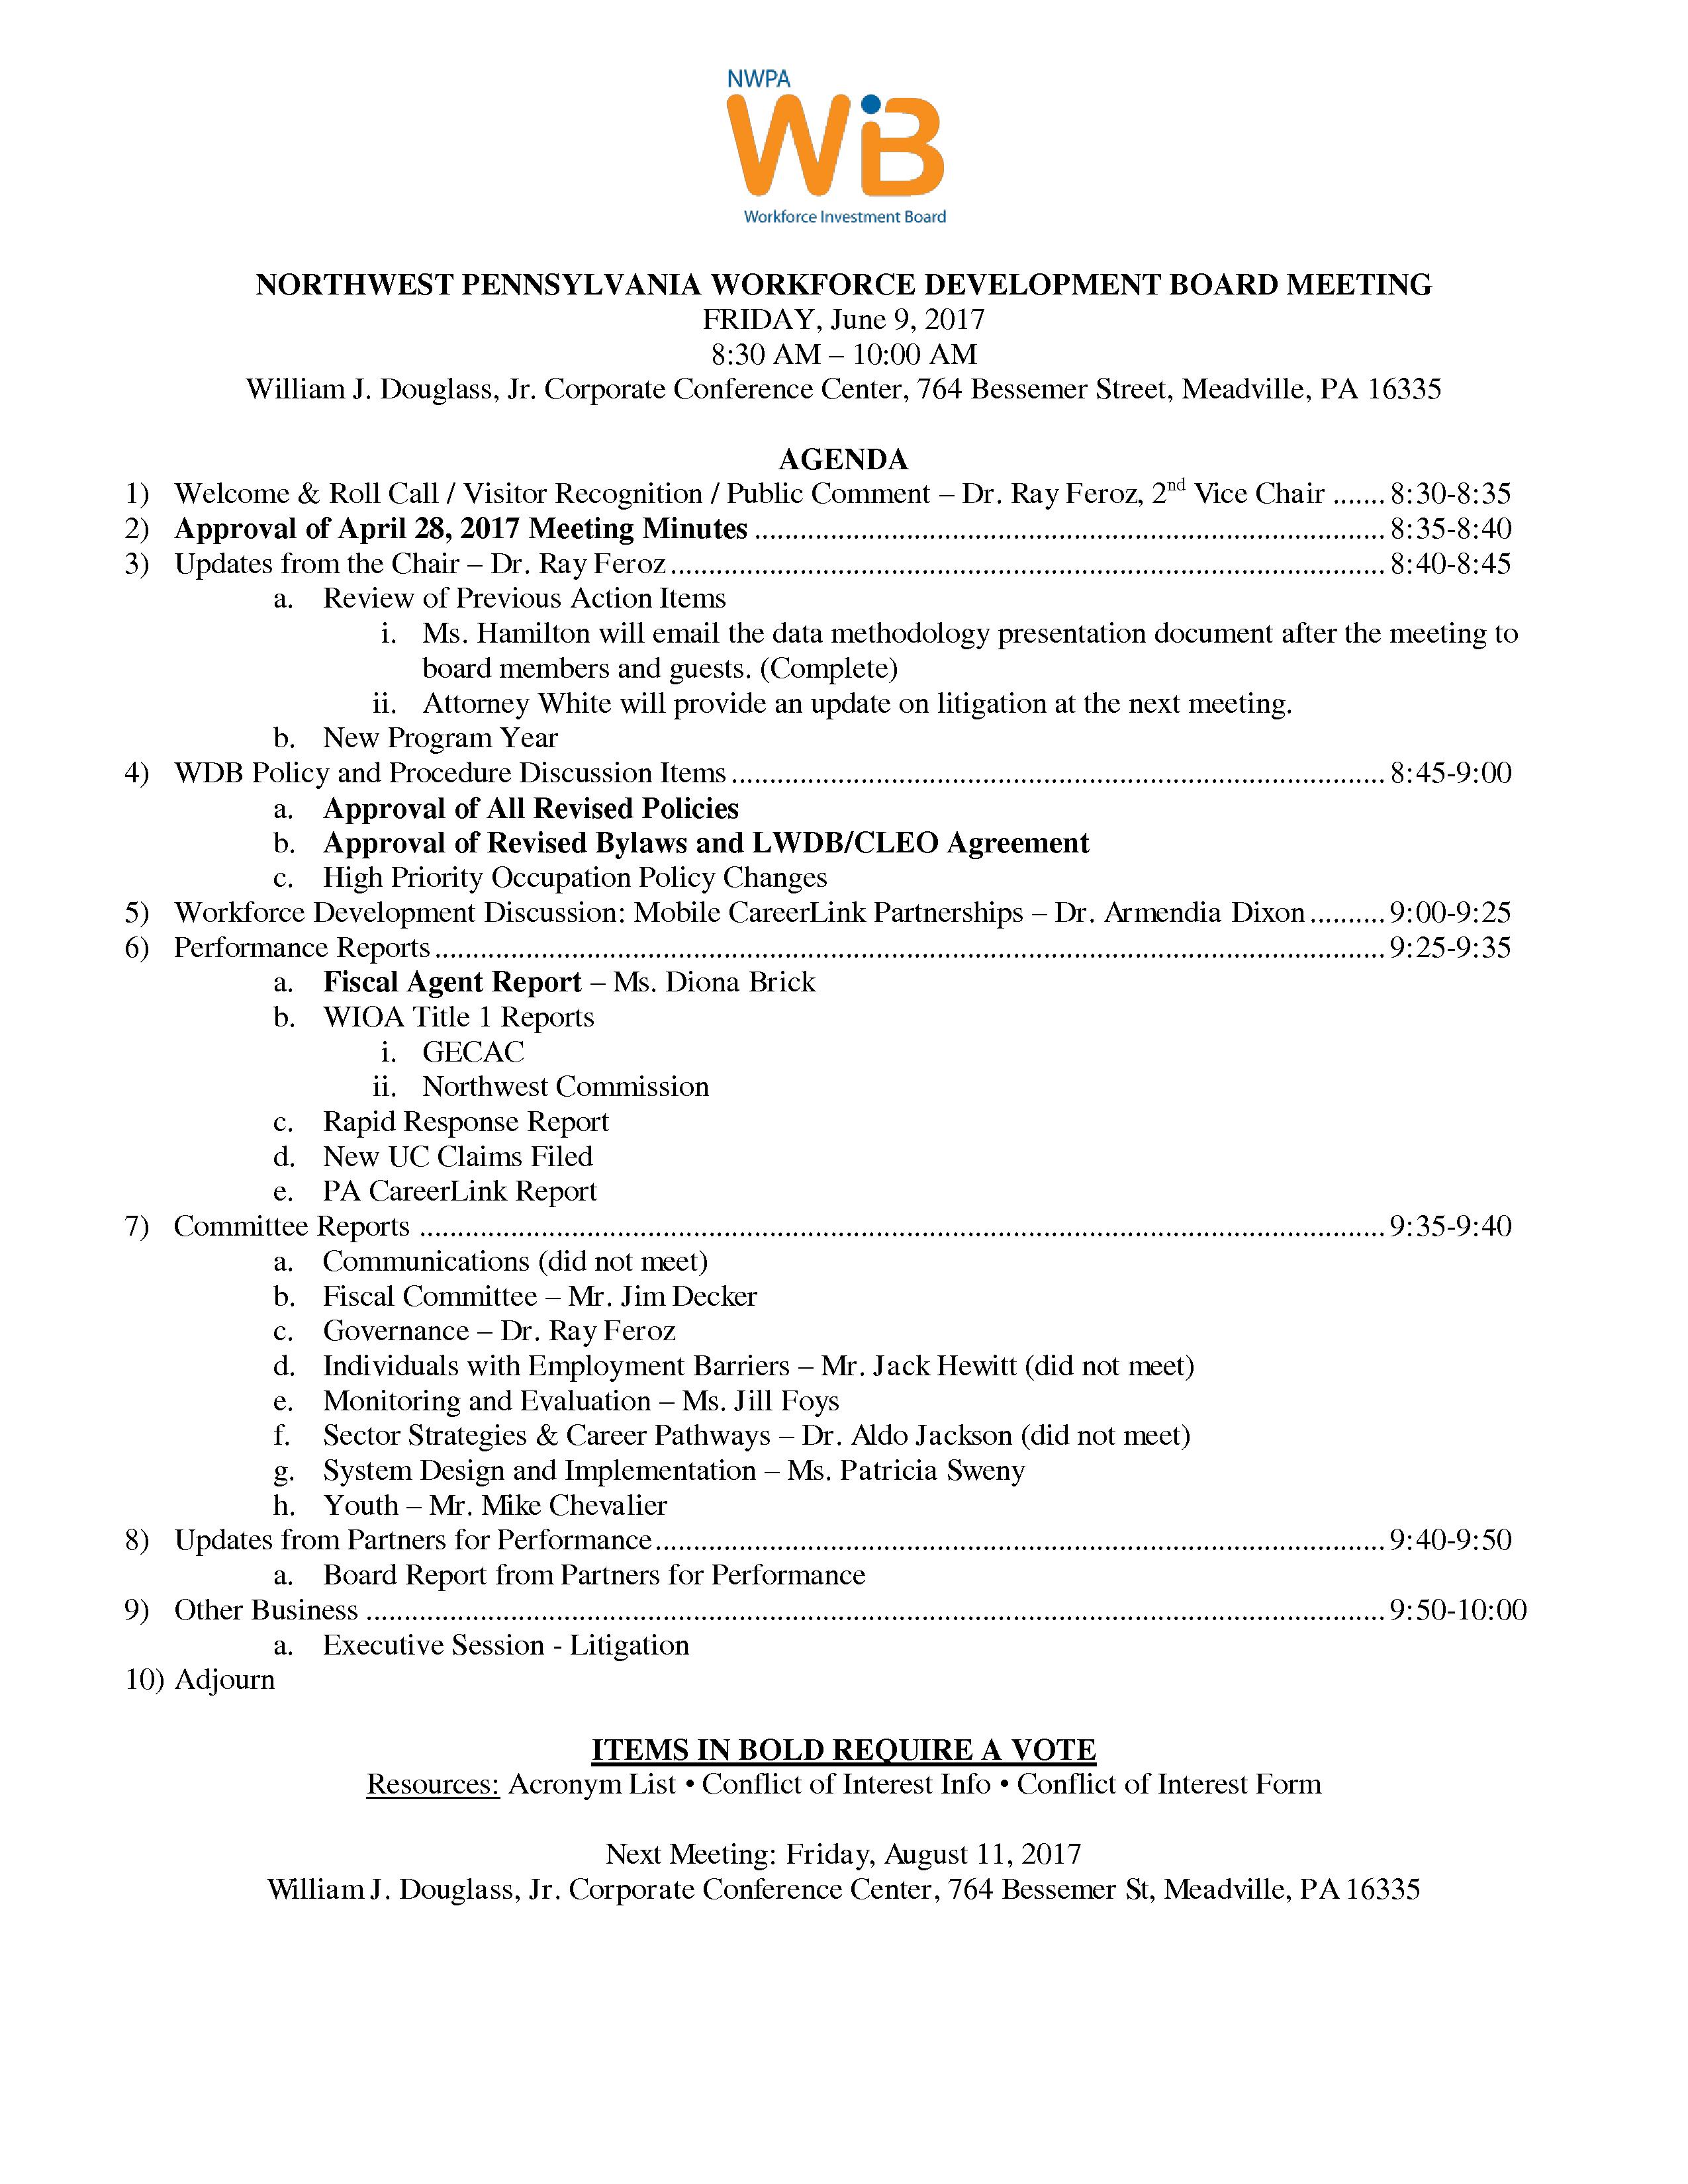 NWPA WDB Agenda 06-09-17